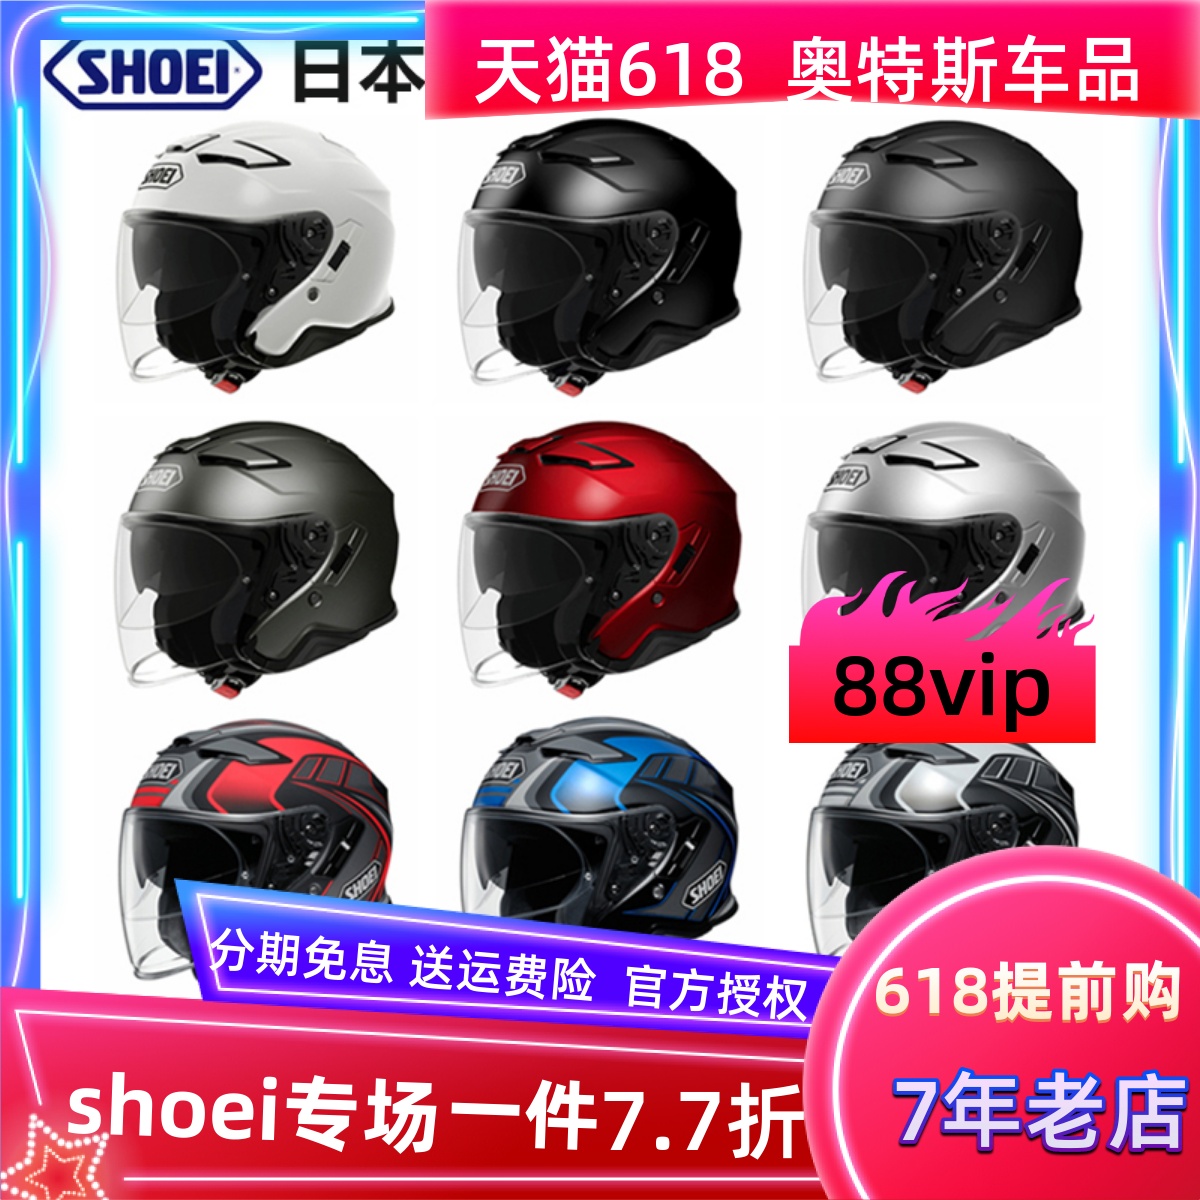 现货日本原装进口SHOEI J-CRUISE2摩托车头盔男双镜片半盔巡航